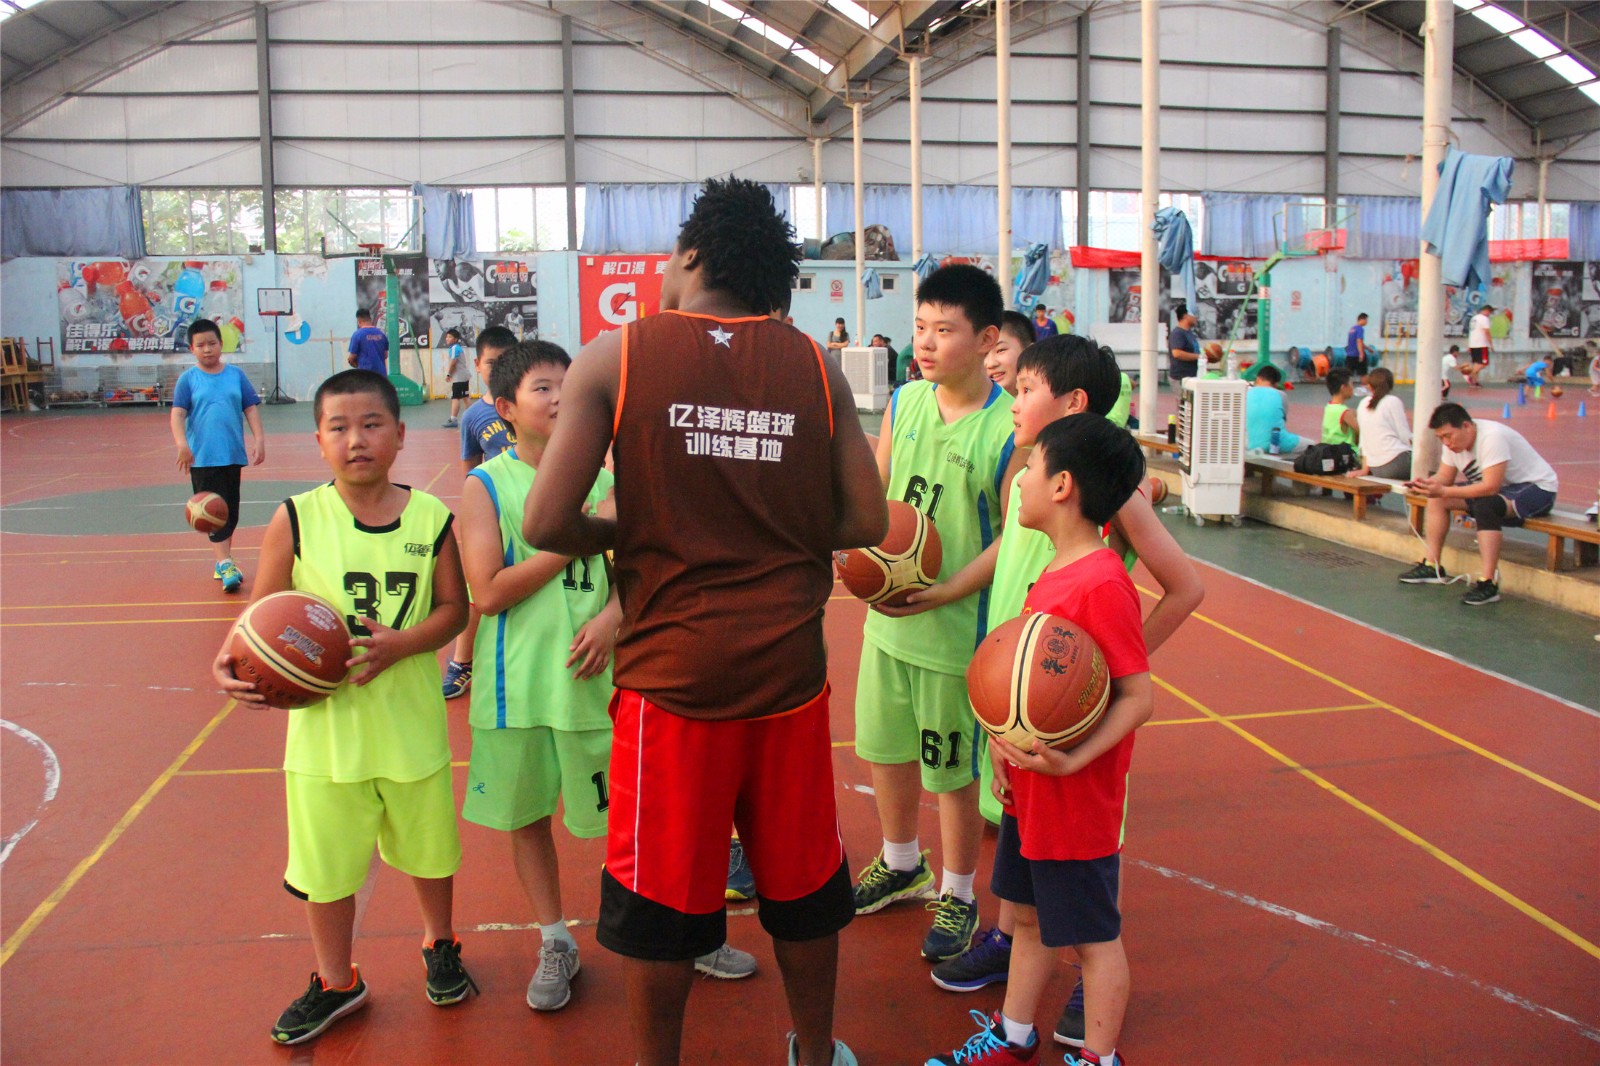 亿泽辉体育,中国青少年篮球培训行业领导品牌